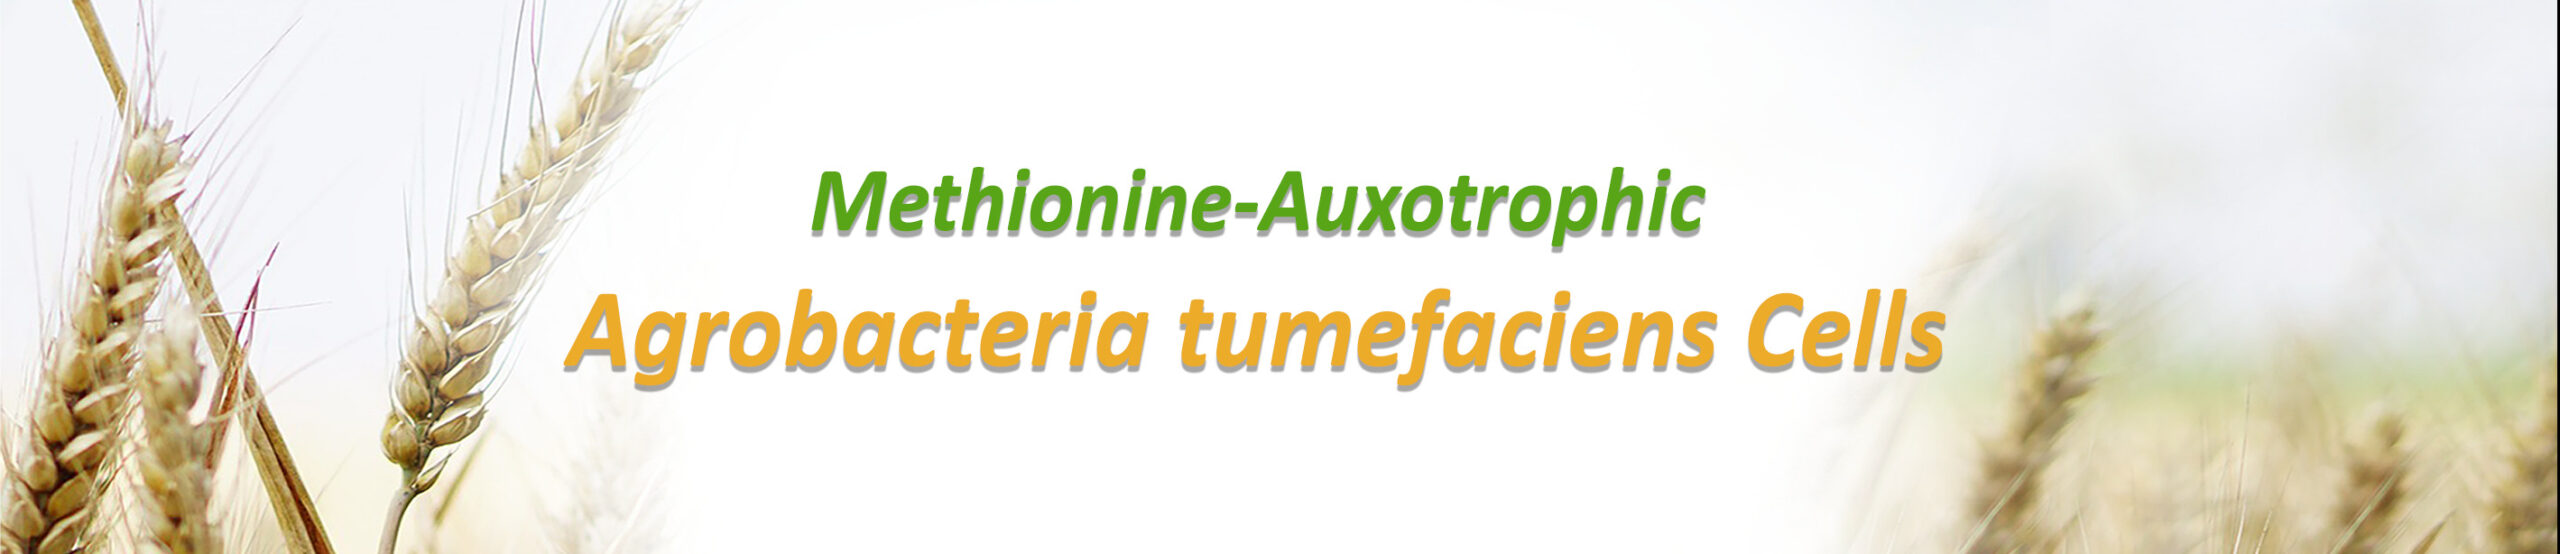 Methionine-Auxotrophic Agrobacteria tumefaciens competent cells header